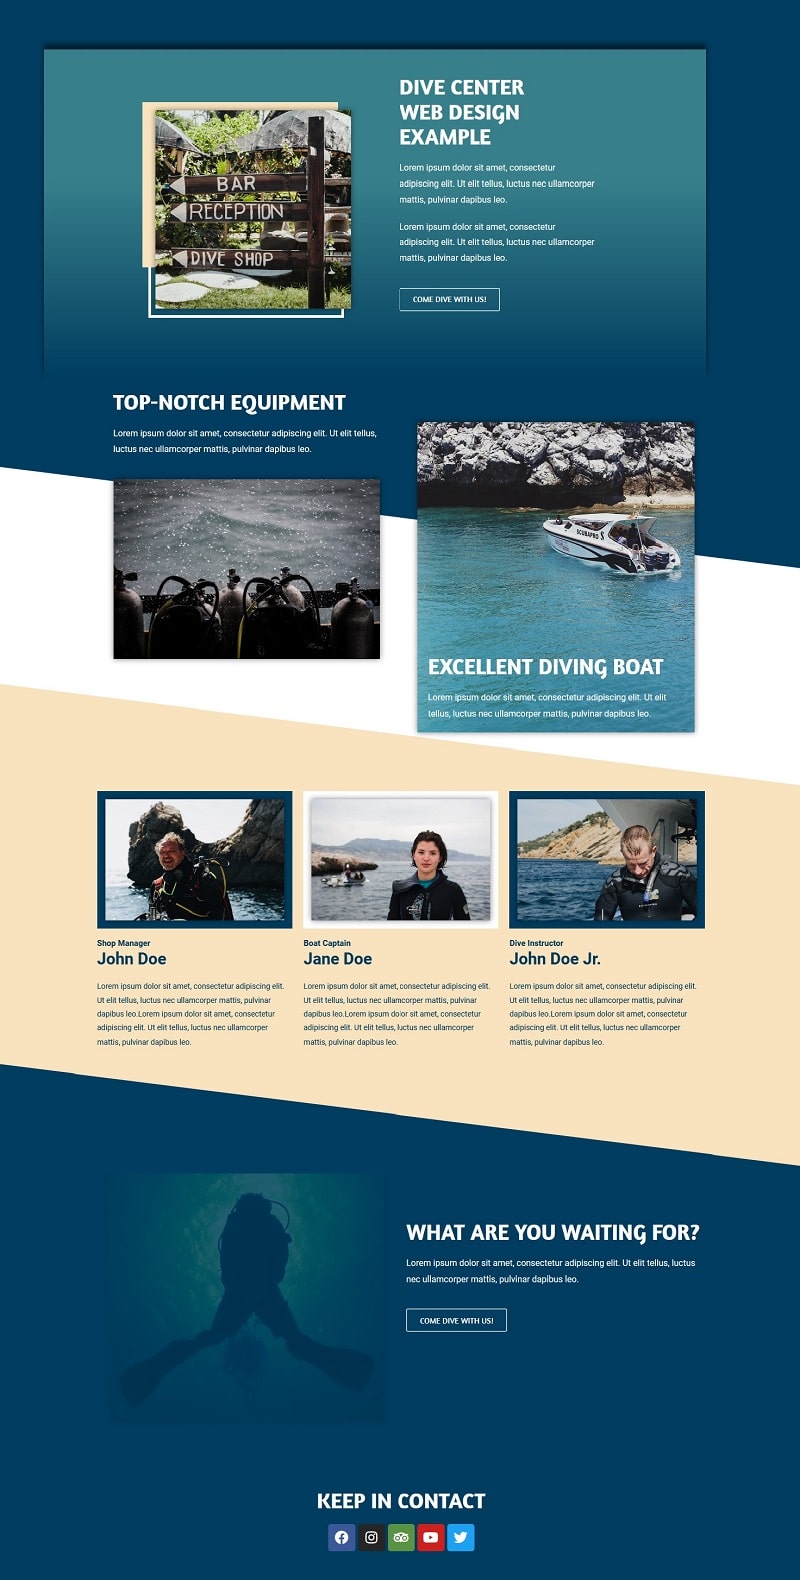 dive center landing page design including team